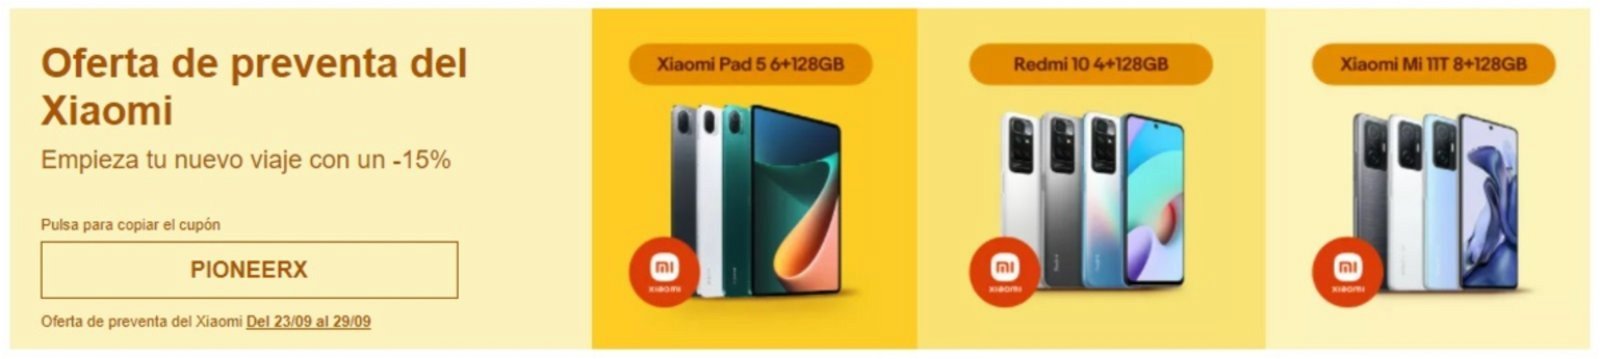 Oferta de preventa de eBay para los nuevos dispositivos de Xiaomi